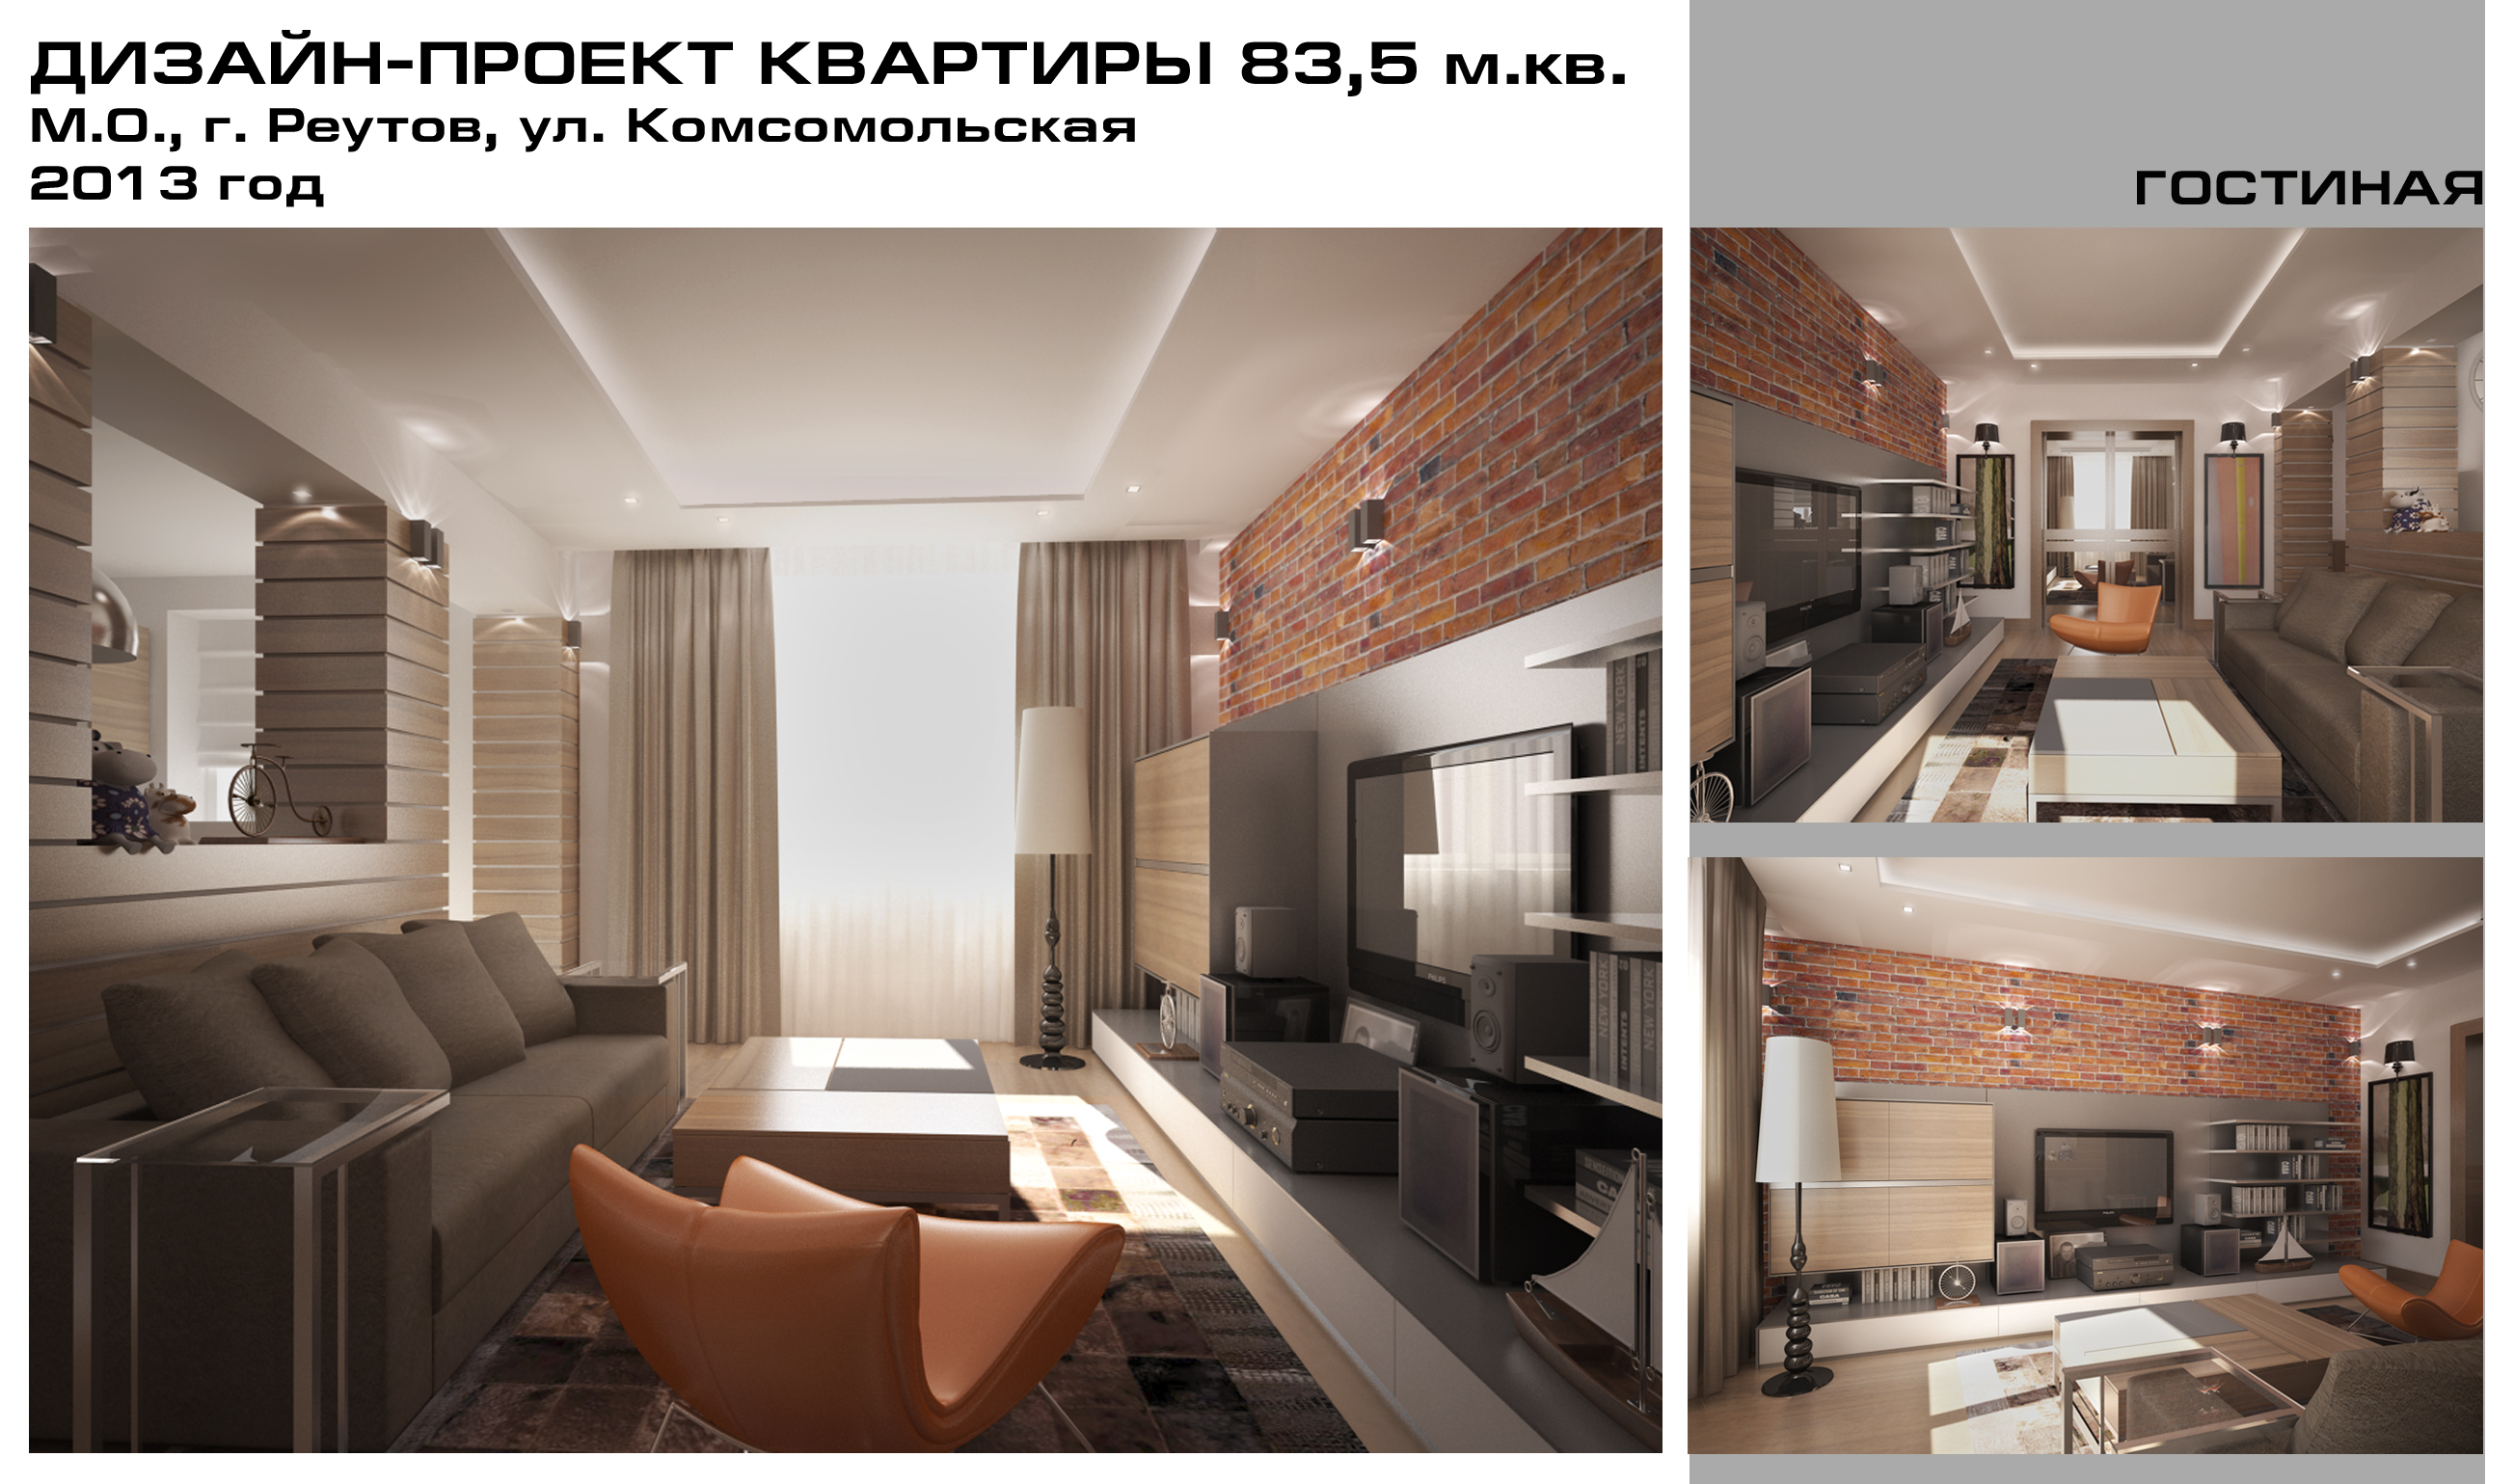 Дизайн-проект квартиры 83,5 м.кв., г. Реутов, 2013 г.